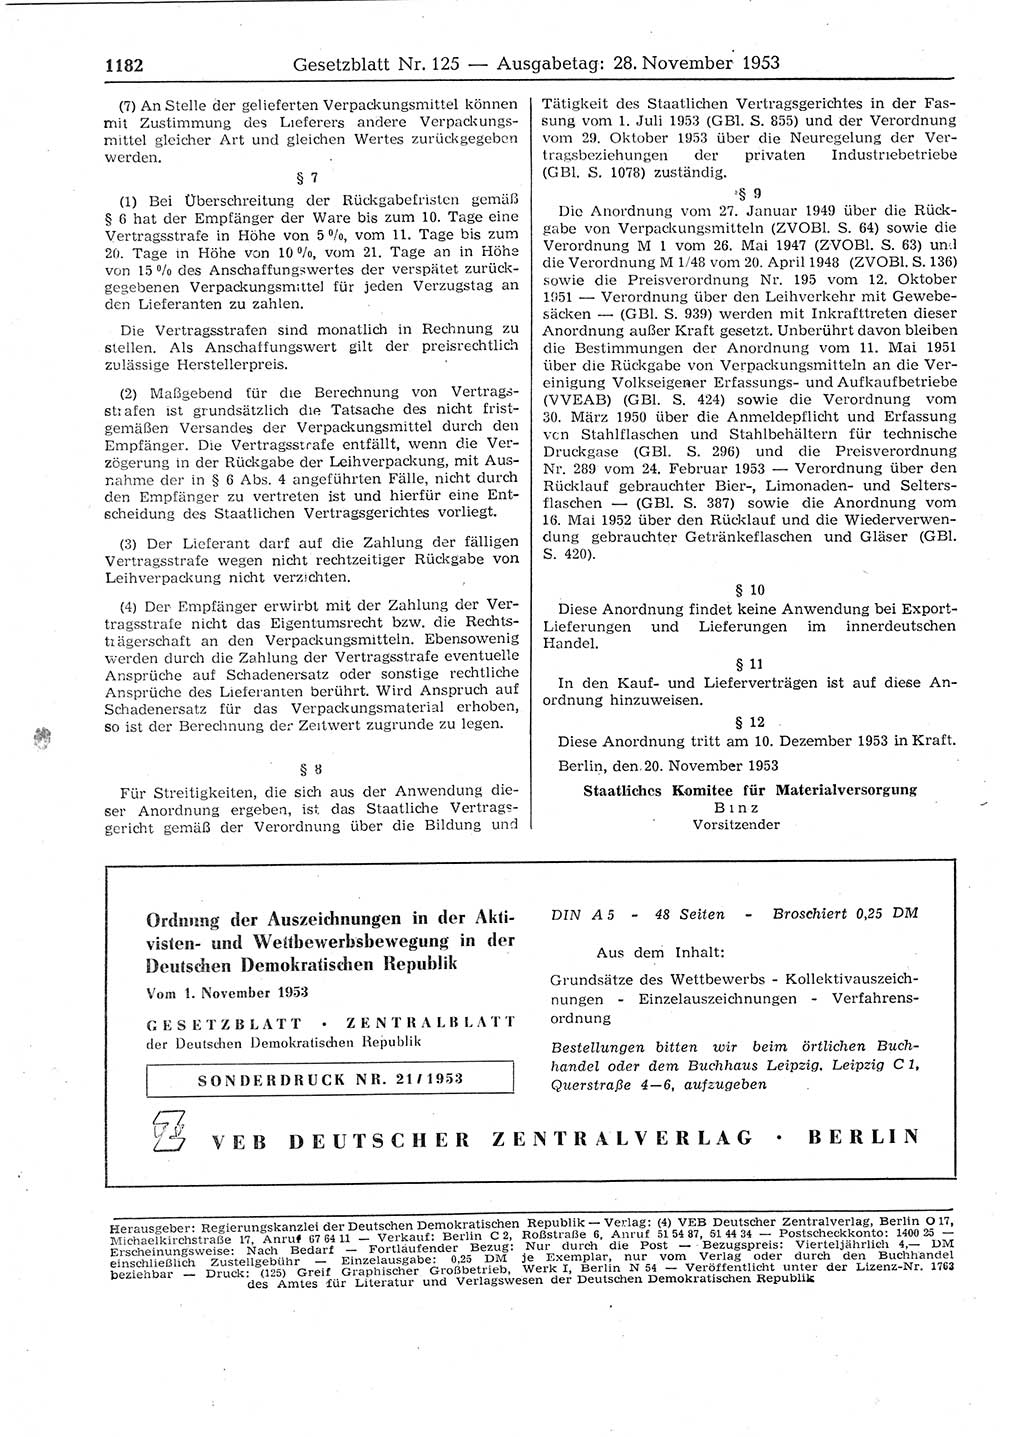 Gesetzblatt (GBl.) der Deutschen Demokratischen Republik (DDR) 1953, Seite 1182 (GBl. DDR 1953, S. 1182)